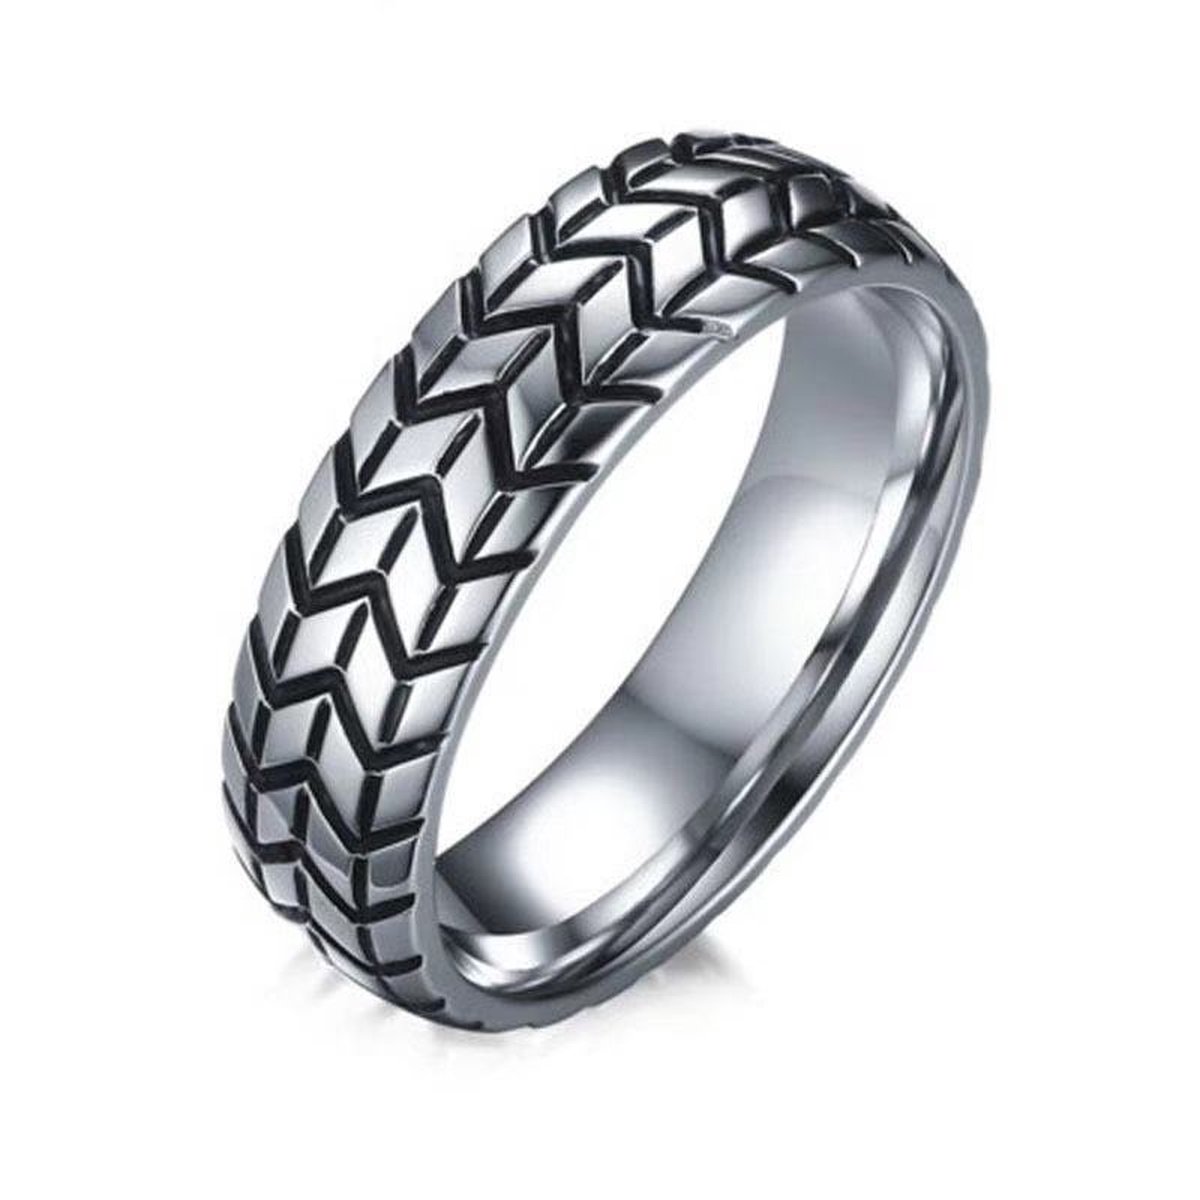 Ring heren zilver staal - Rvs ringen voor man van Mauro Vinci - met geschenkverpakking - maat 12